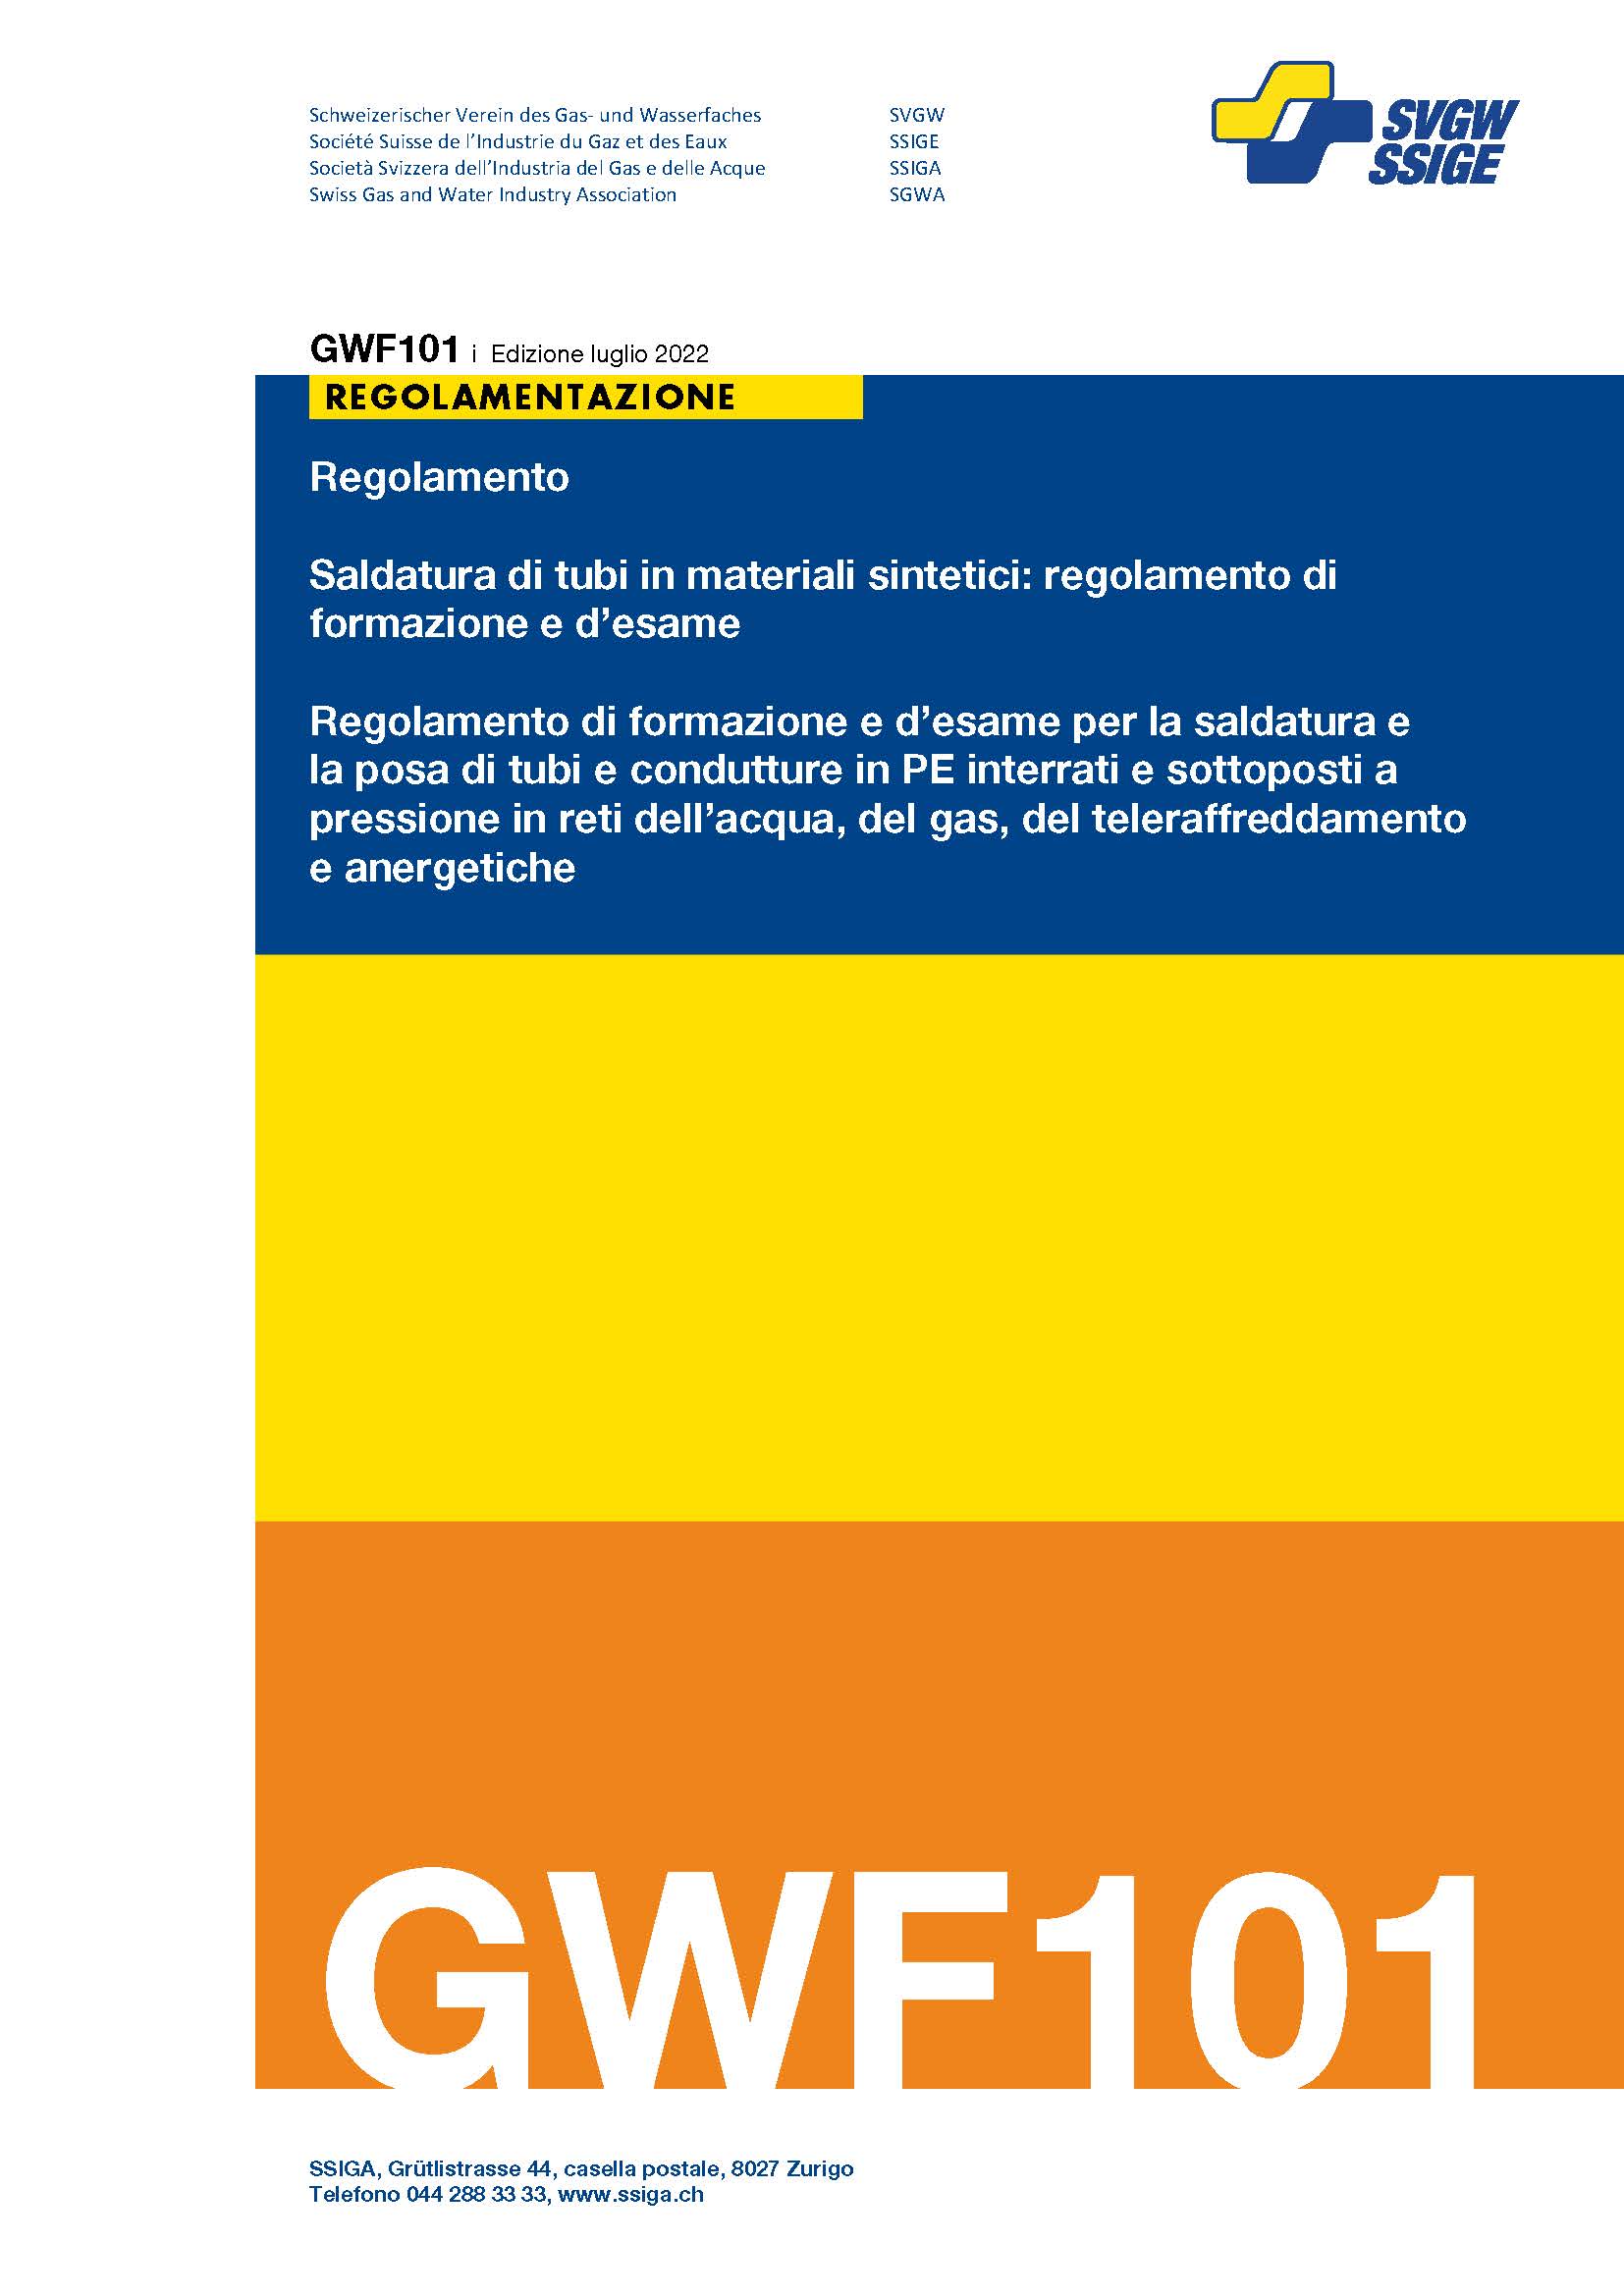 GWF101 i Saldatura di tubi in materiali sintetici: regolamento di formazione e d’esame